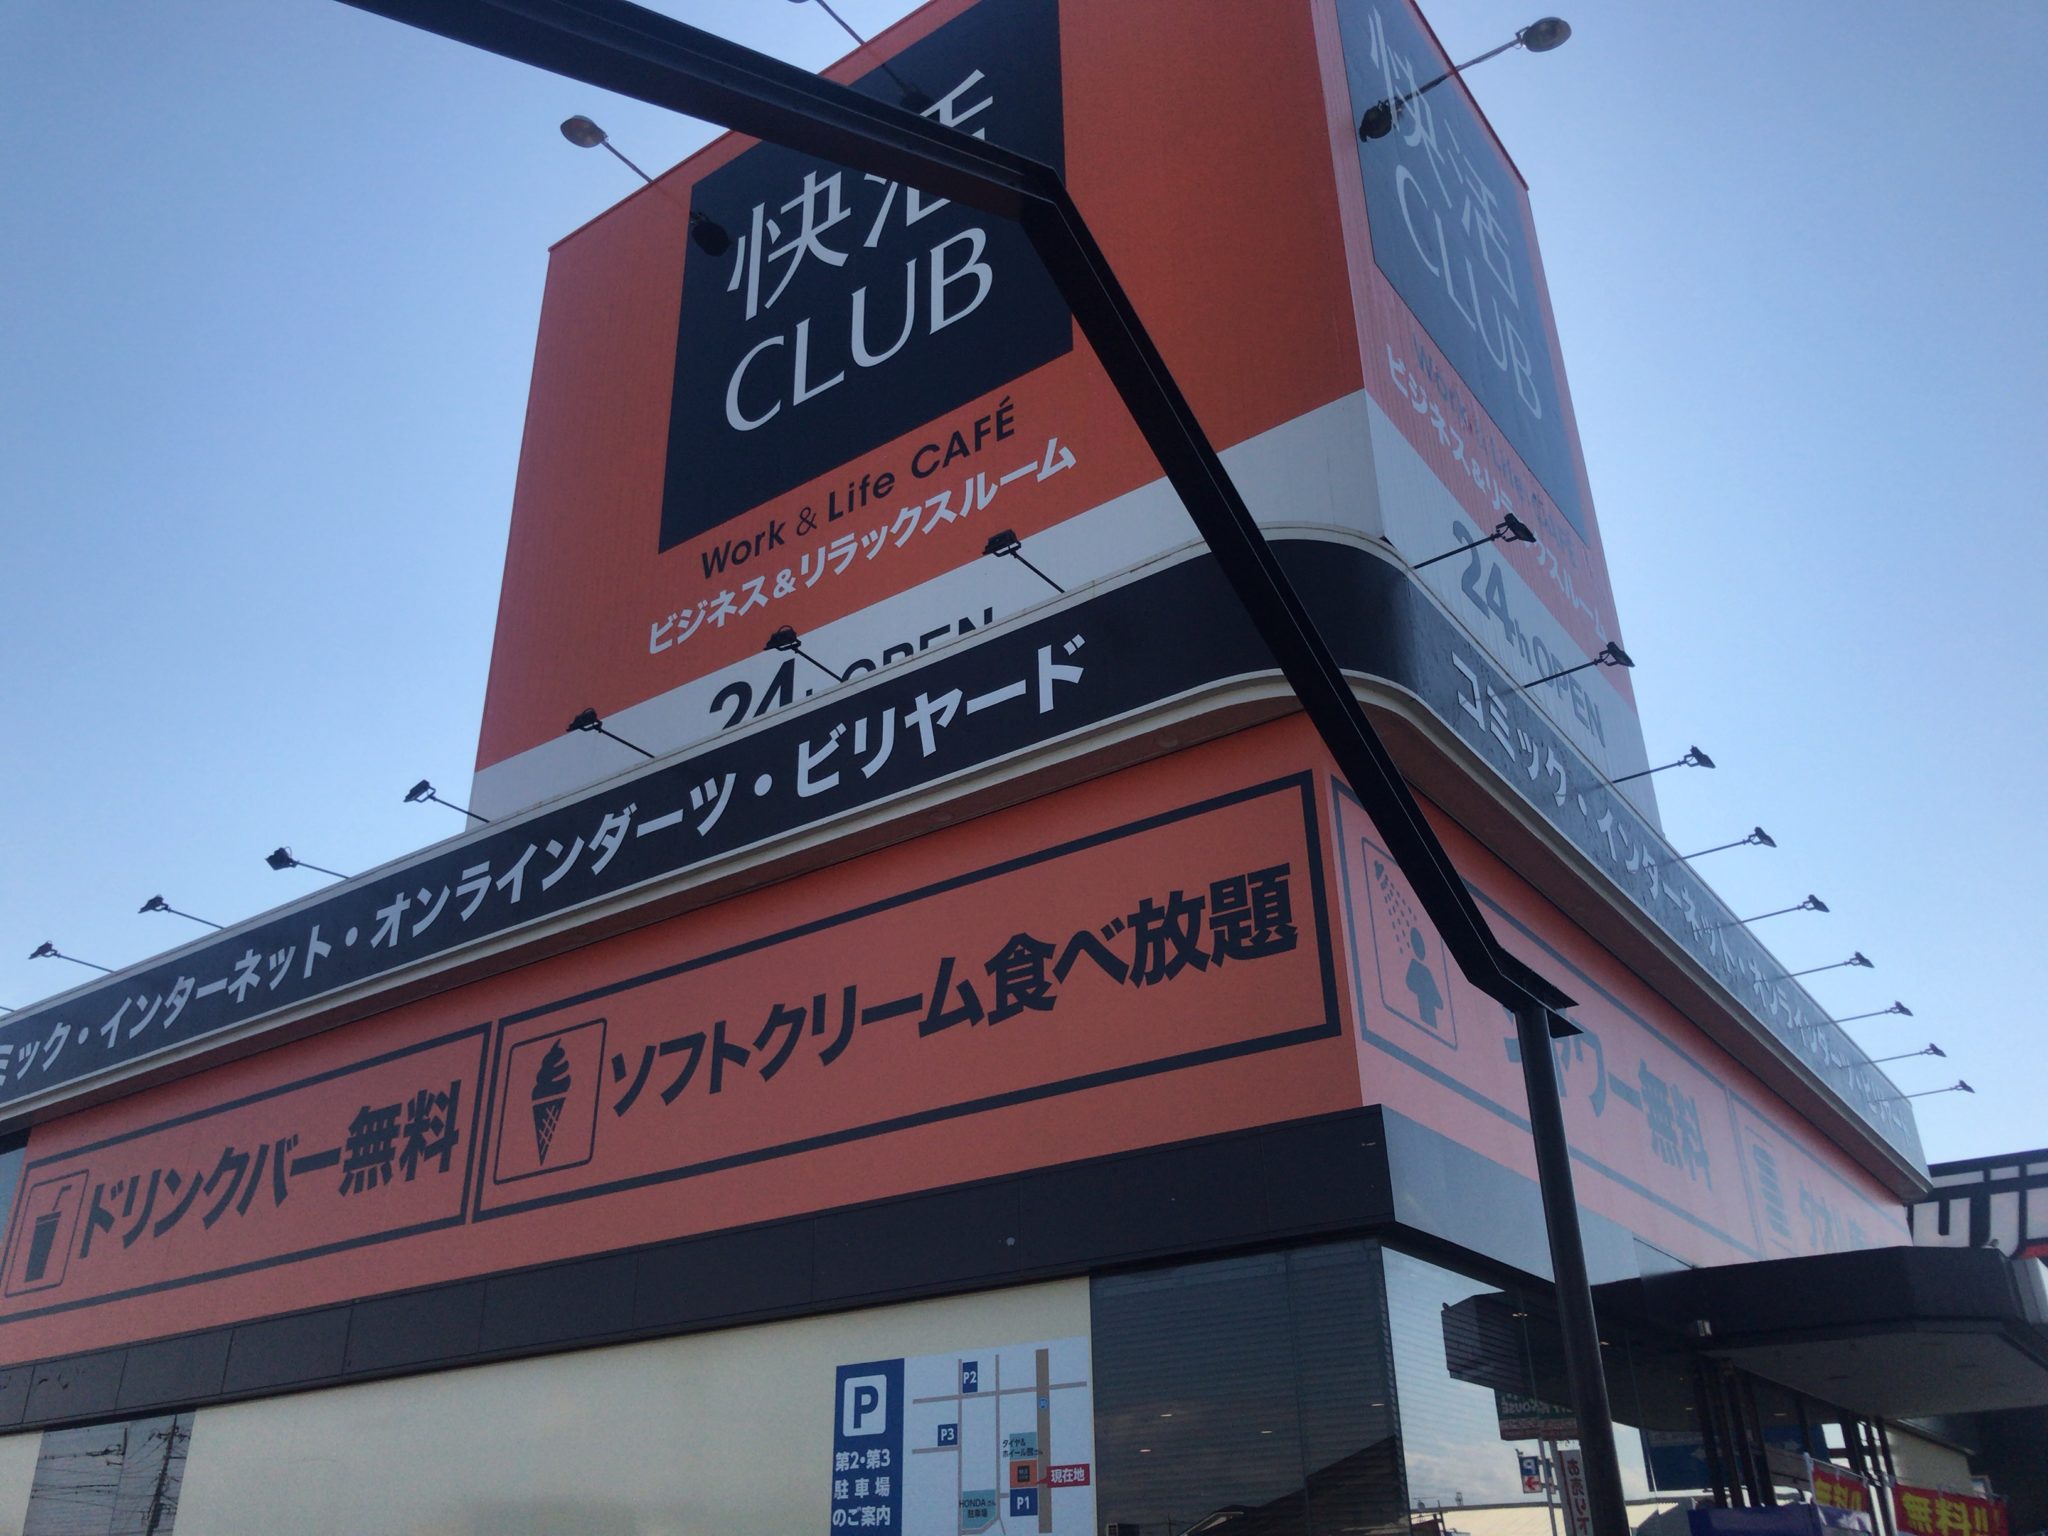 小山駅から徒歩26分 快活club 50号小山店をレポート ヒマップ